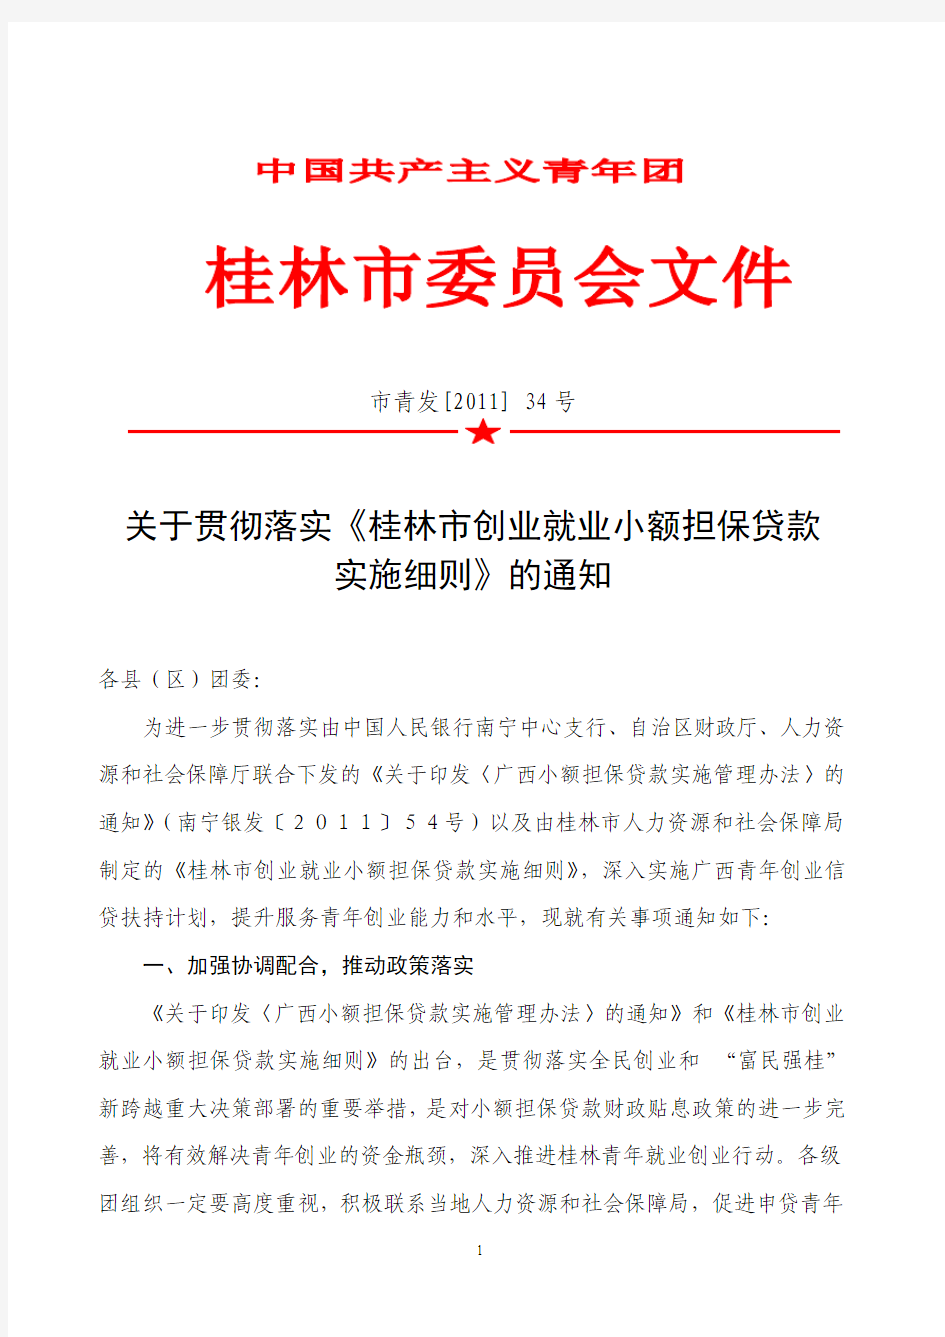 《桂林市创业就业小额担保贷款实施细则》的通知